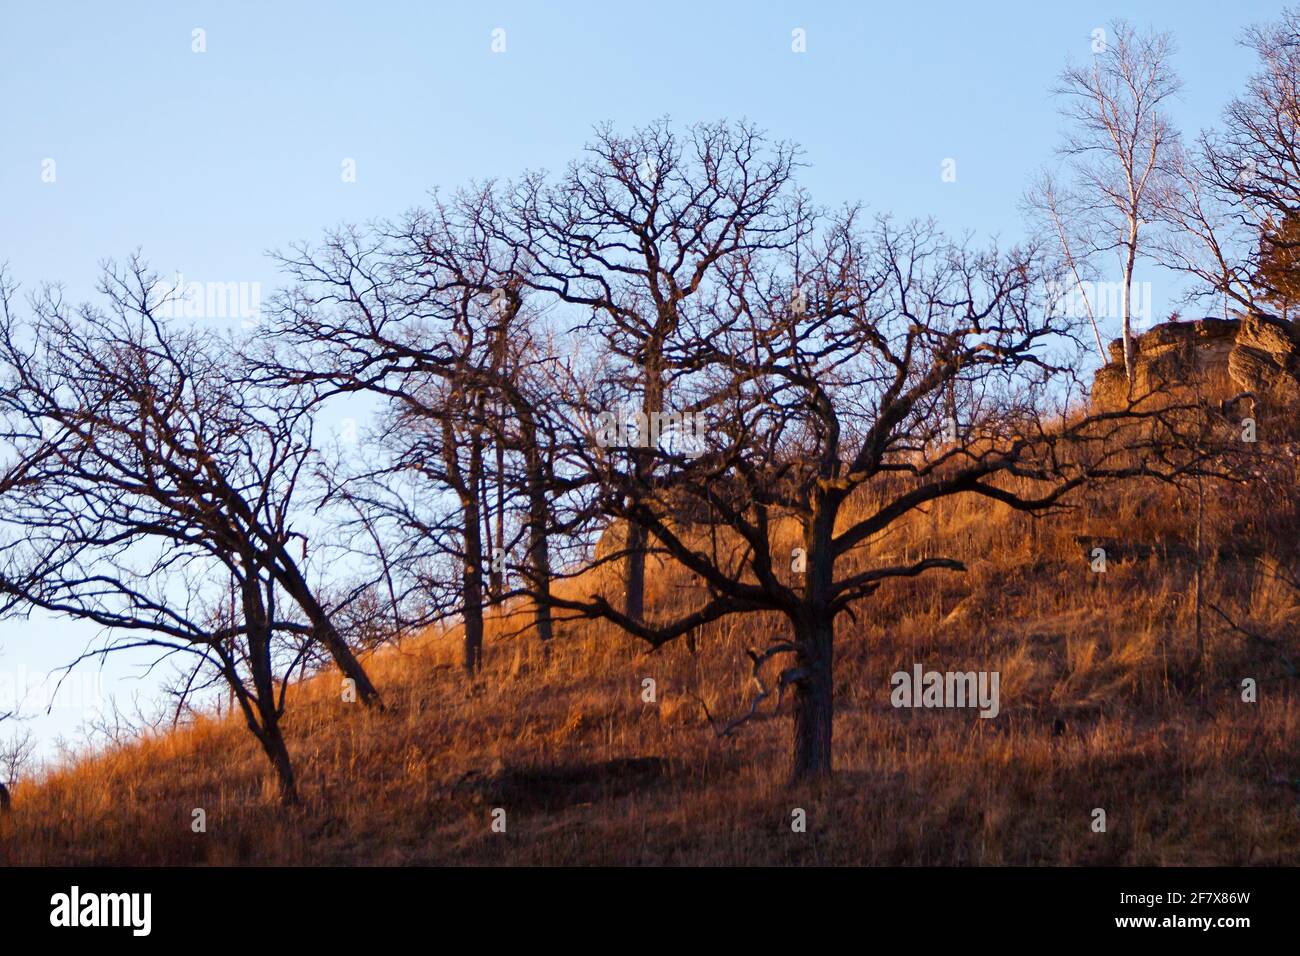 7 gennaio 2012 le erbe secche che coprono le pendici di questa savana di quercia catturano la luce del sole che tramonta in questo freddo giorno d'inverno. Foto Stock